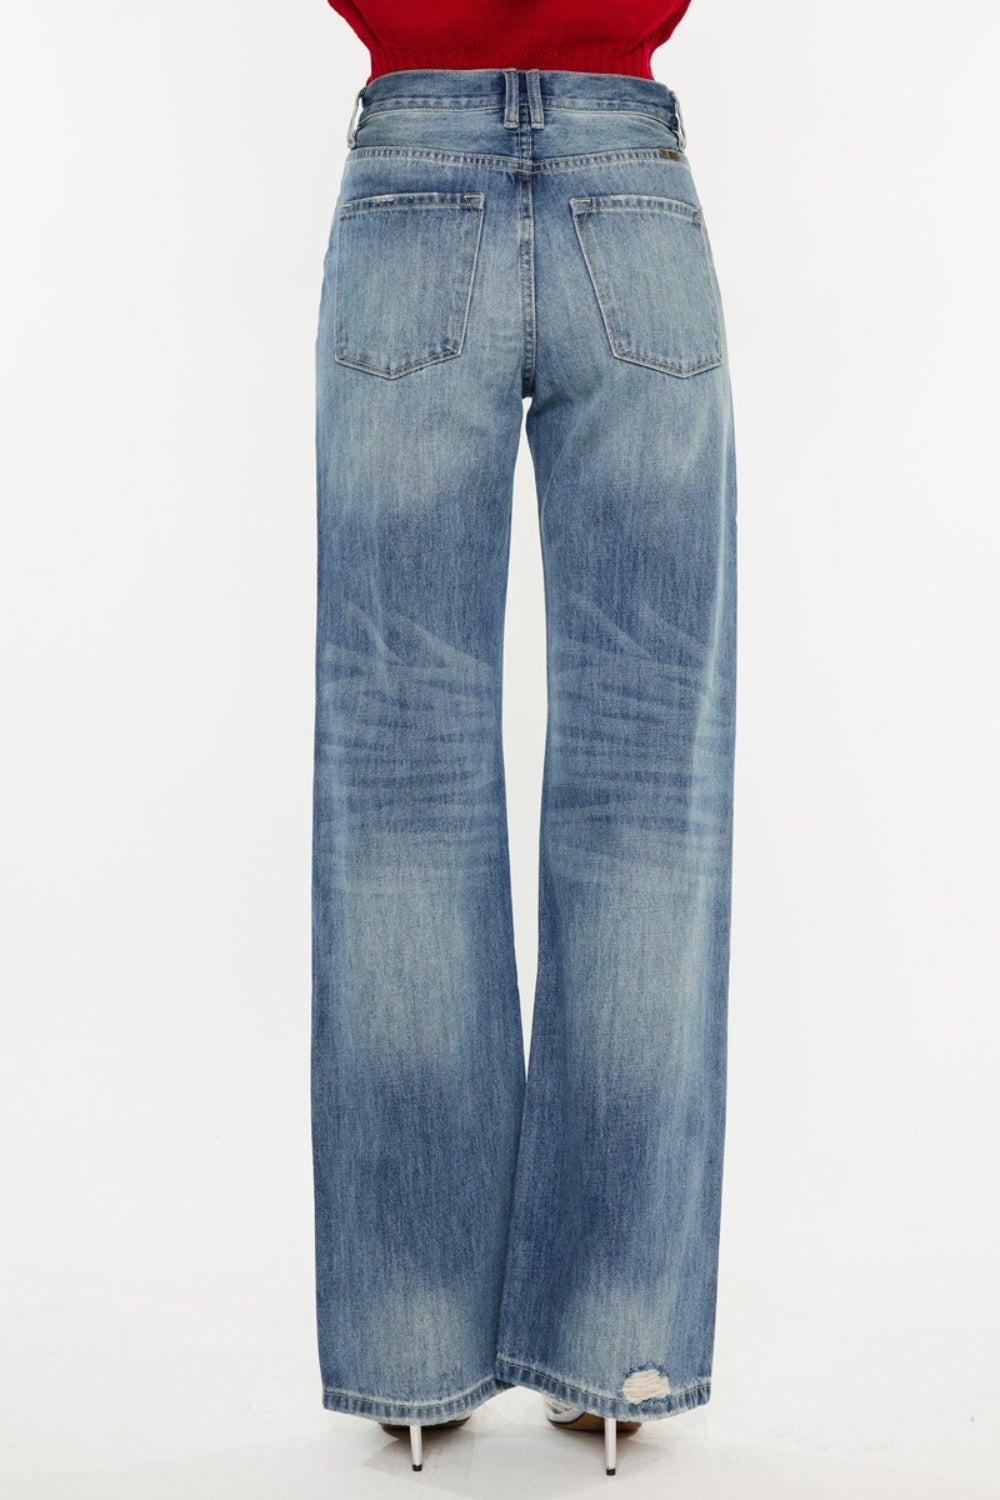 Kancan Distressed High Waist Bootcut Jeans - Ryzela